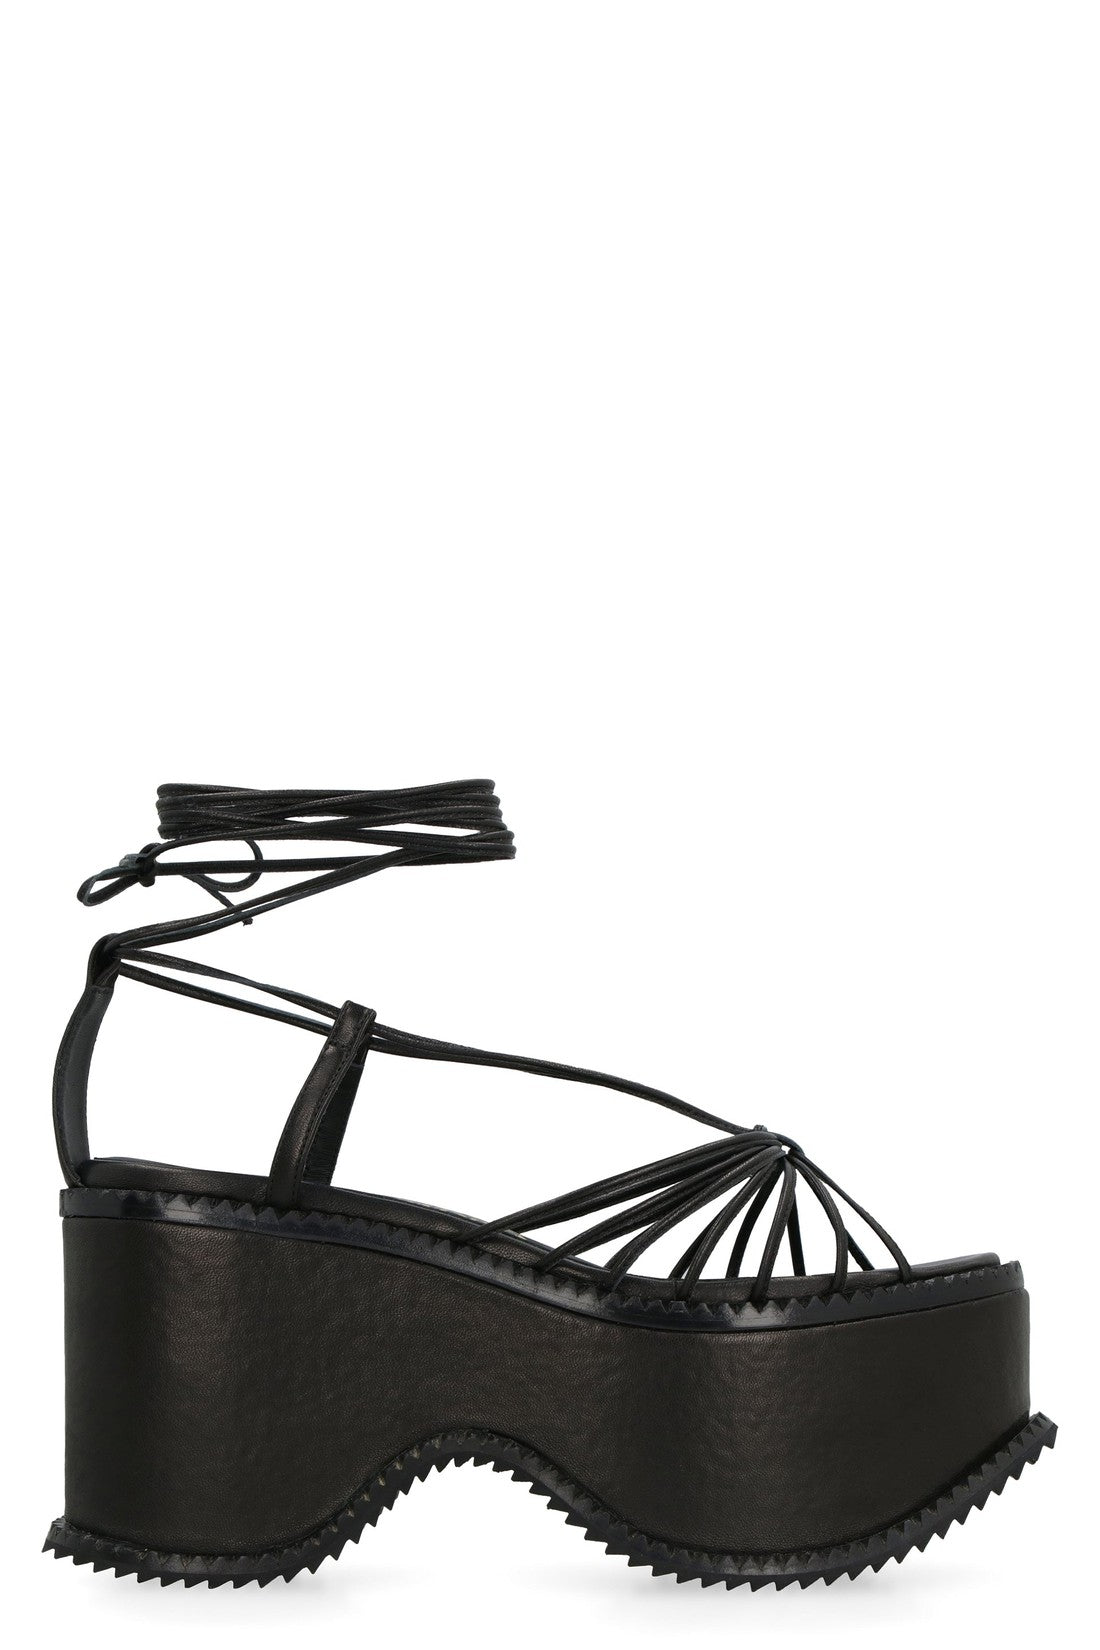 Vivienne Westwood-OUTLET-SALE-Leather platform sandals-ARCHIVIST